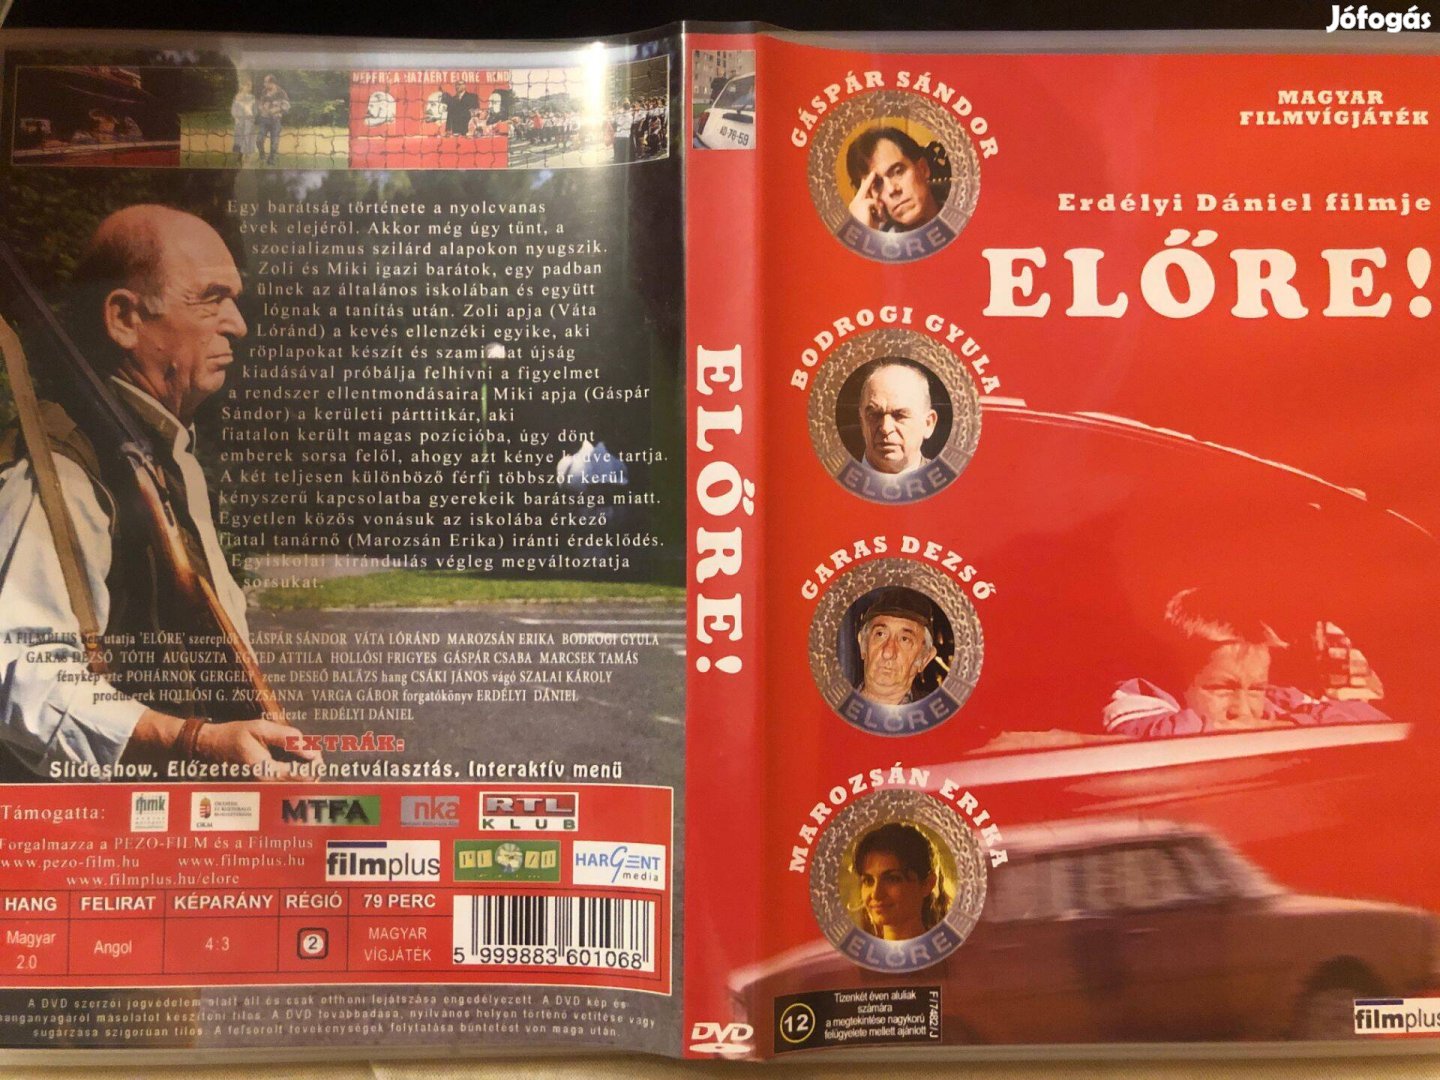 Előre DVD (karcmentes, ritkaság, Gáspár Sándor, Bodrogi Gyula)